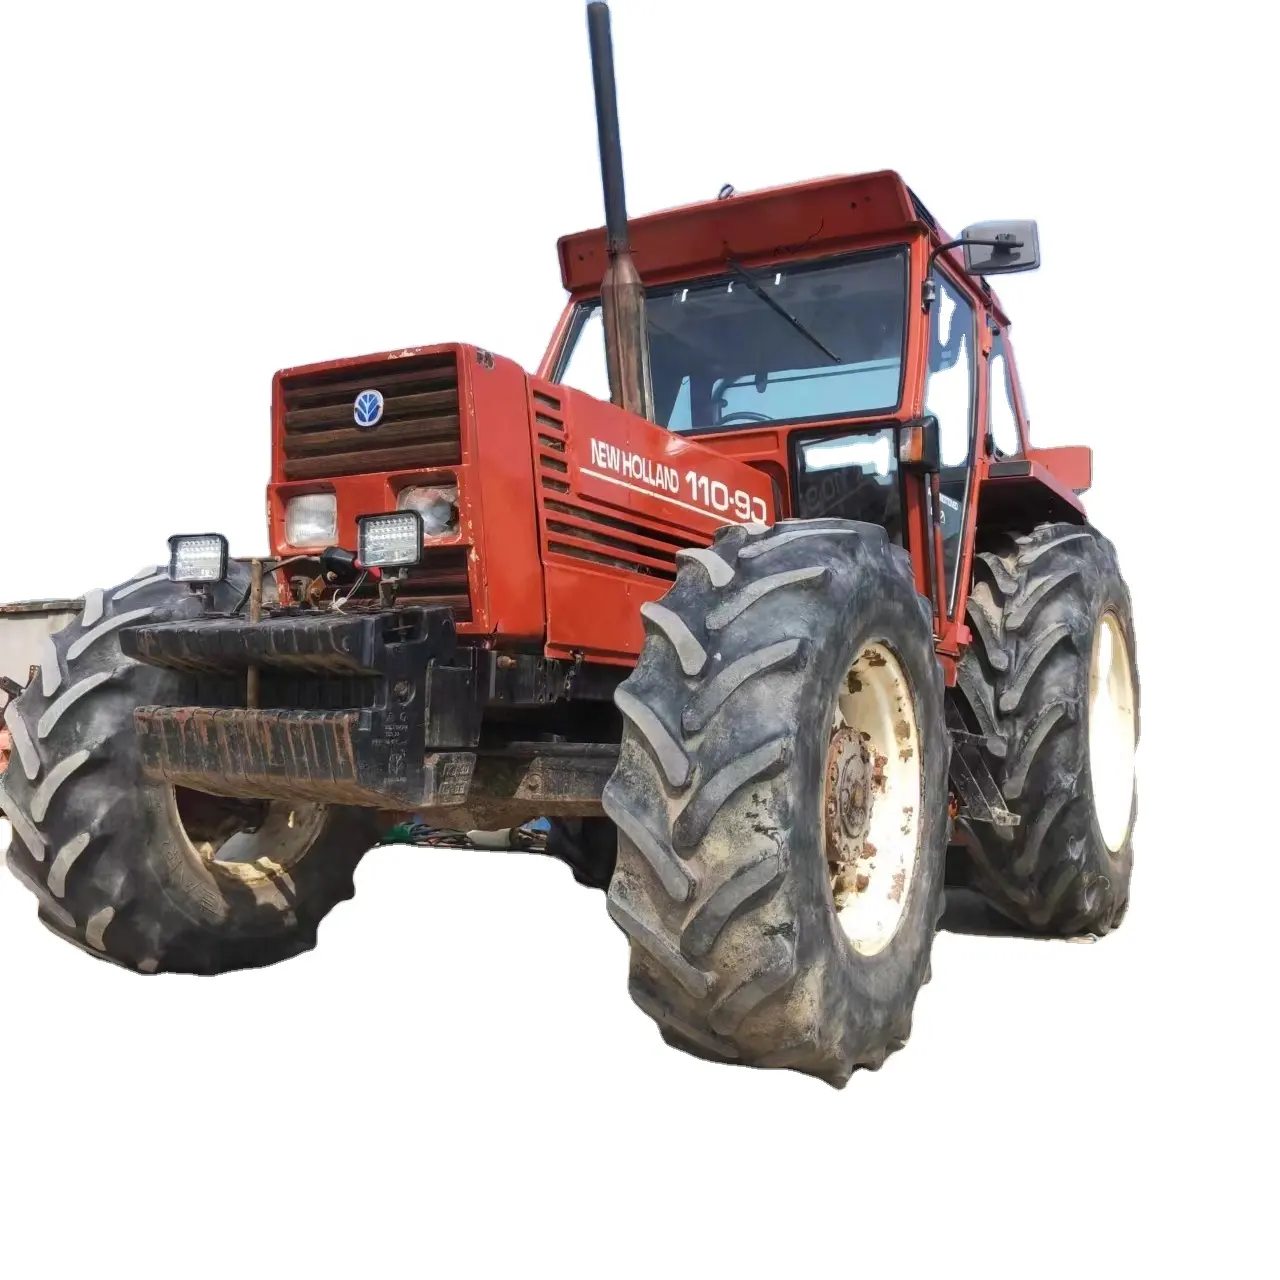 Tractor de segunda mano con ruedas de granja italiana, nuevo equipo agrícola compacto, 110-90, 4x4WD